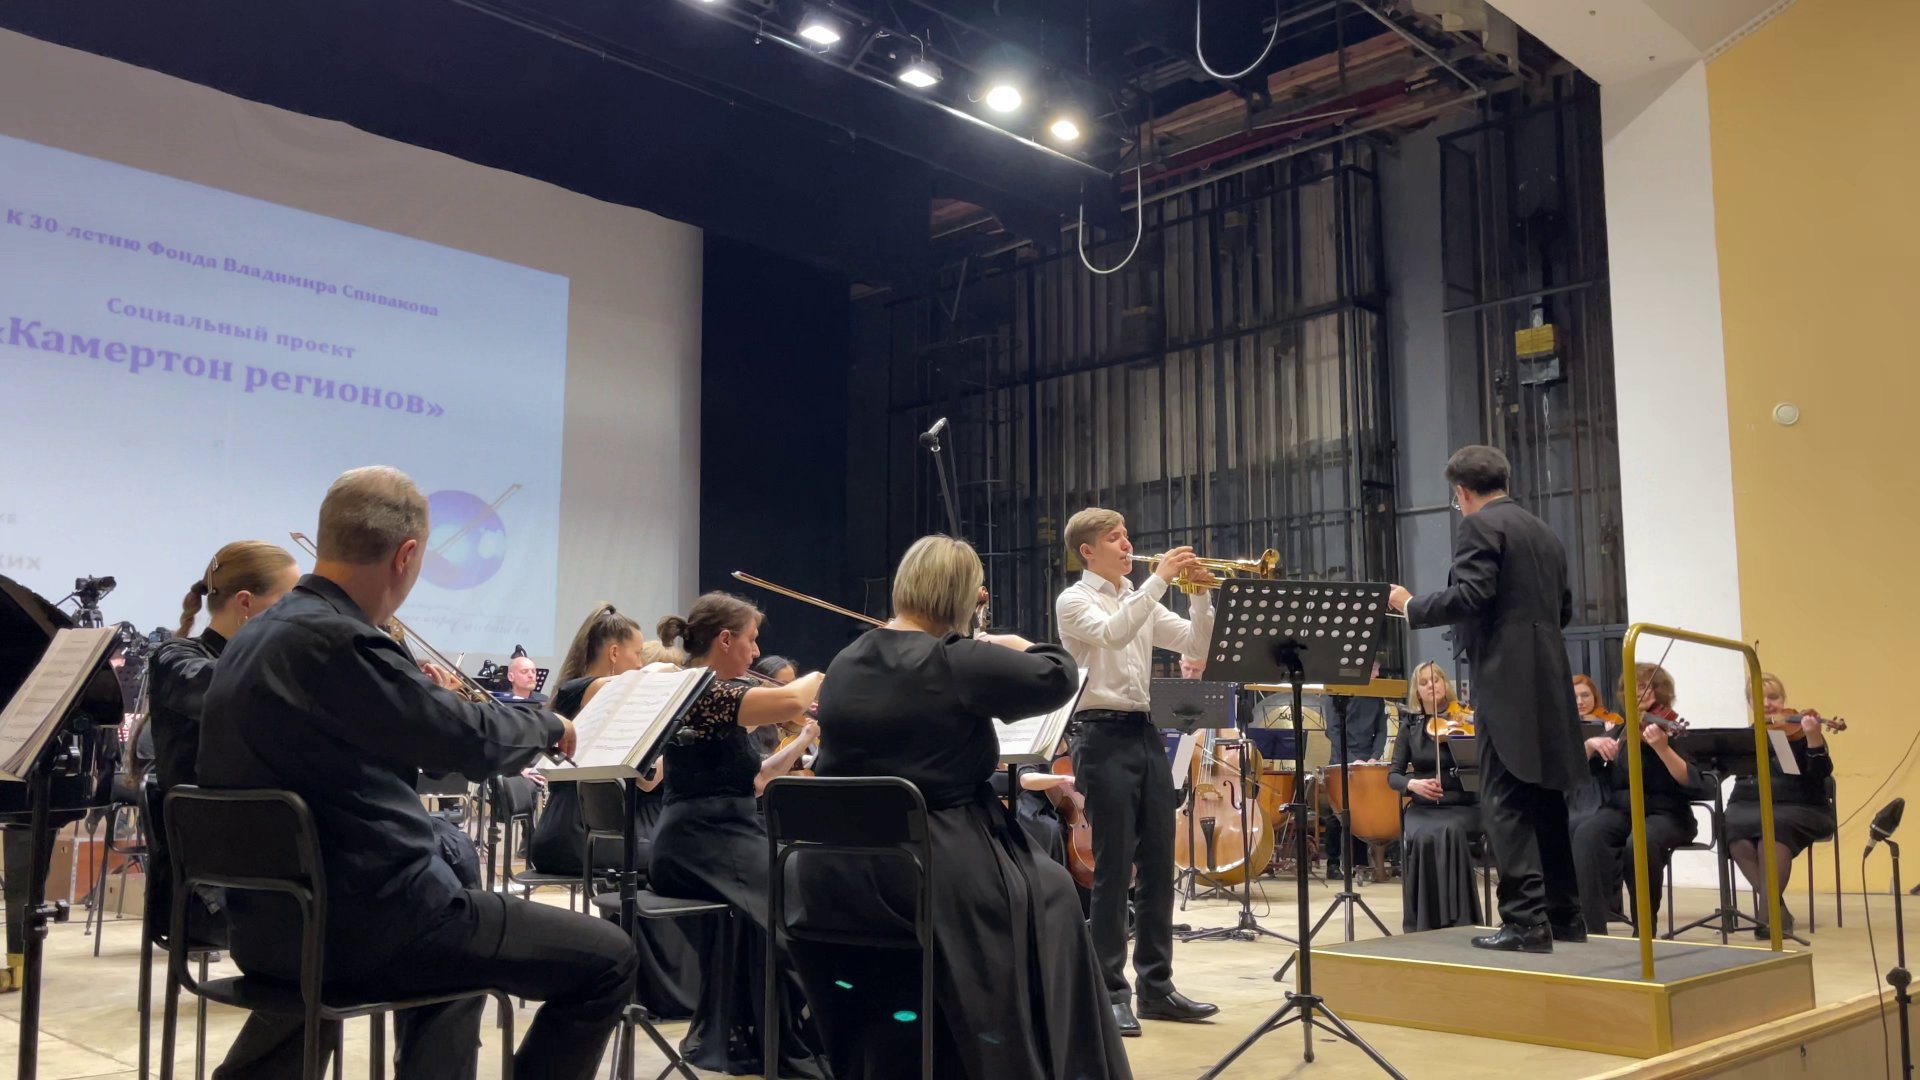 Юные музыканты проекта «Камертон регионов» выступили на костромской сцене вместе с Губернским симфоническим оркестром